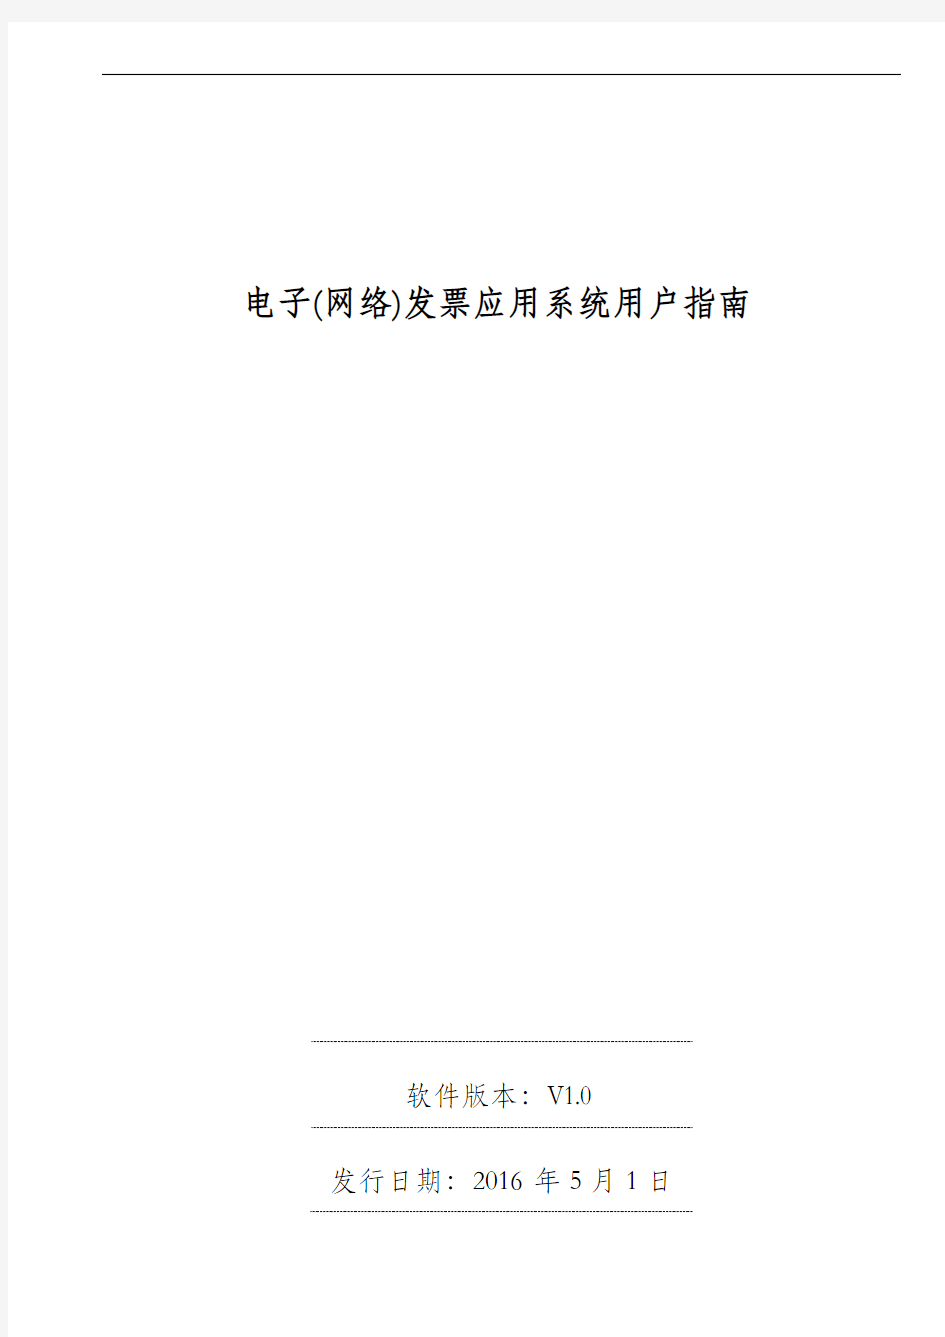 广东省国家税务局电子(网络)发票应用系统用户指南资料